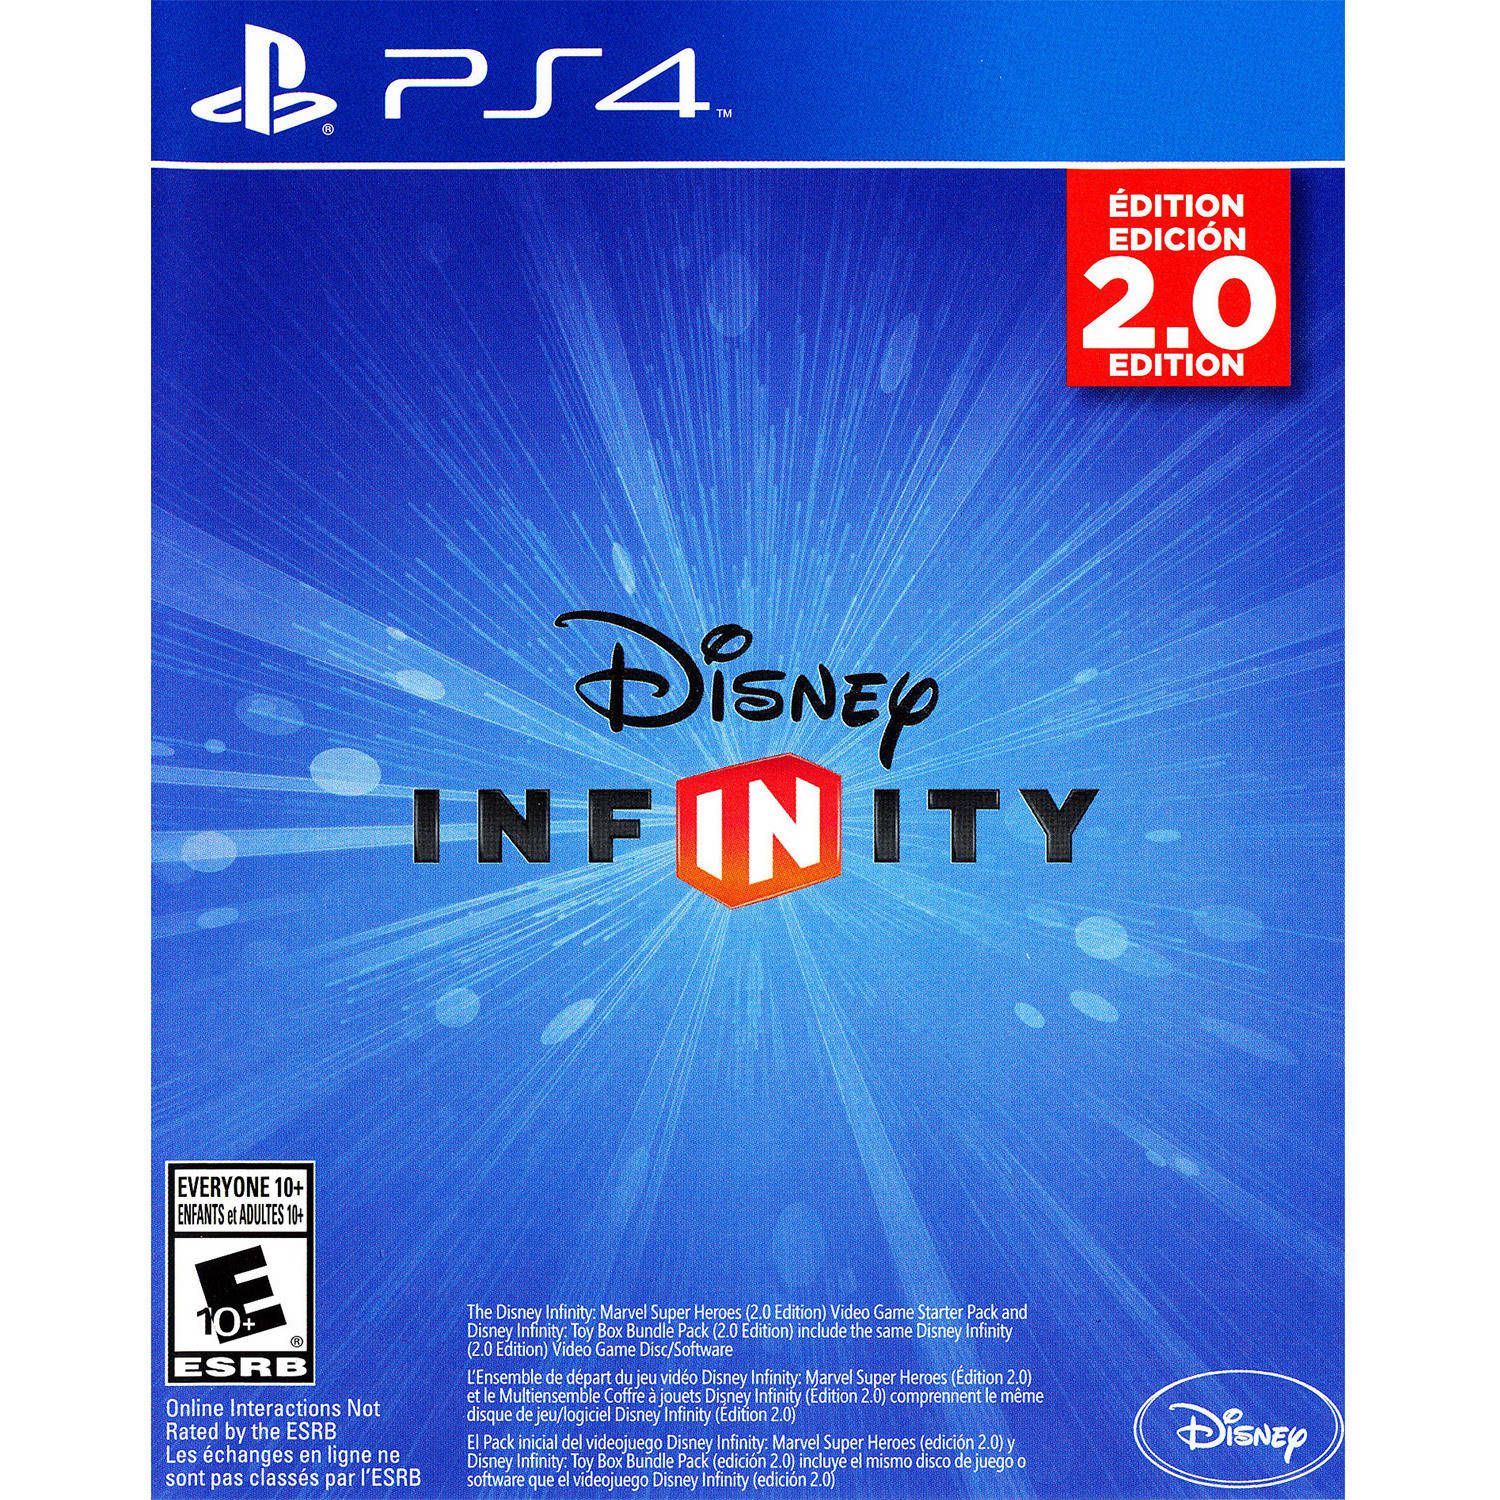 Jogo Disney Infinity PS3 Usado - Meu Game Favorito